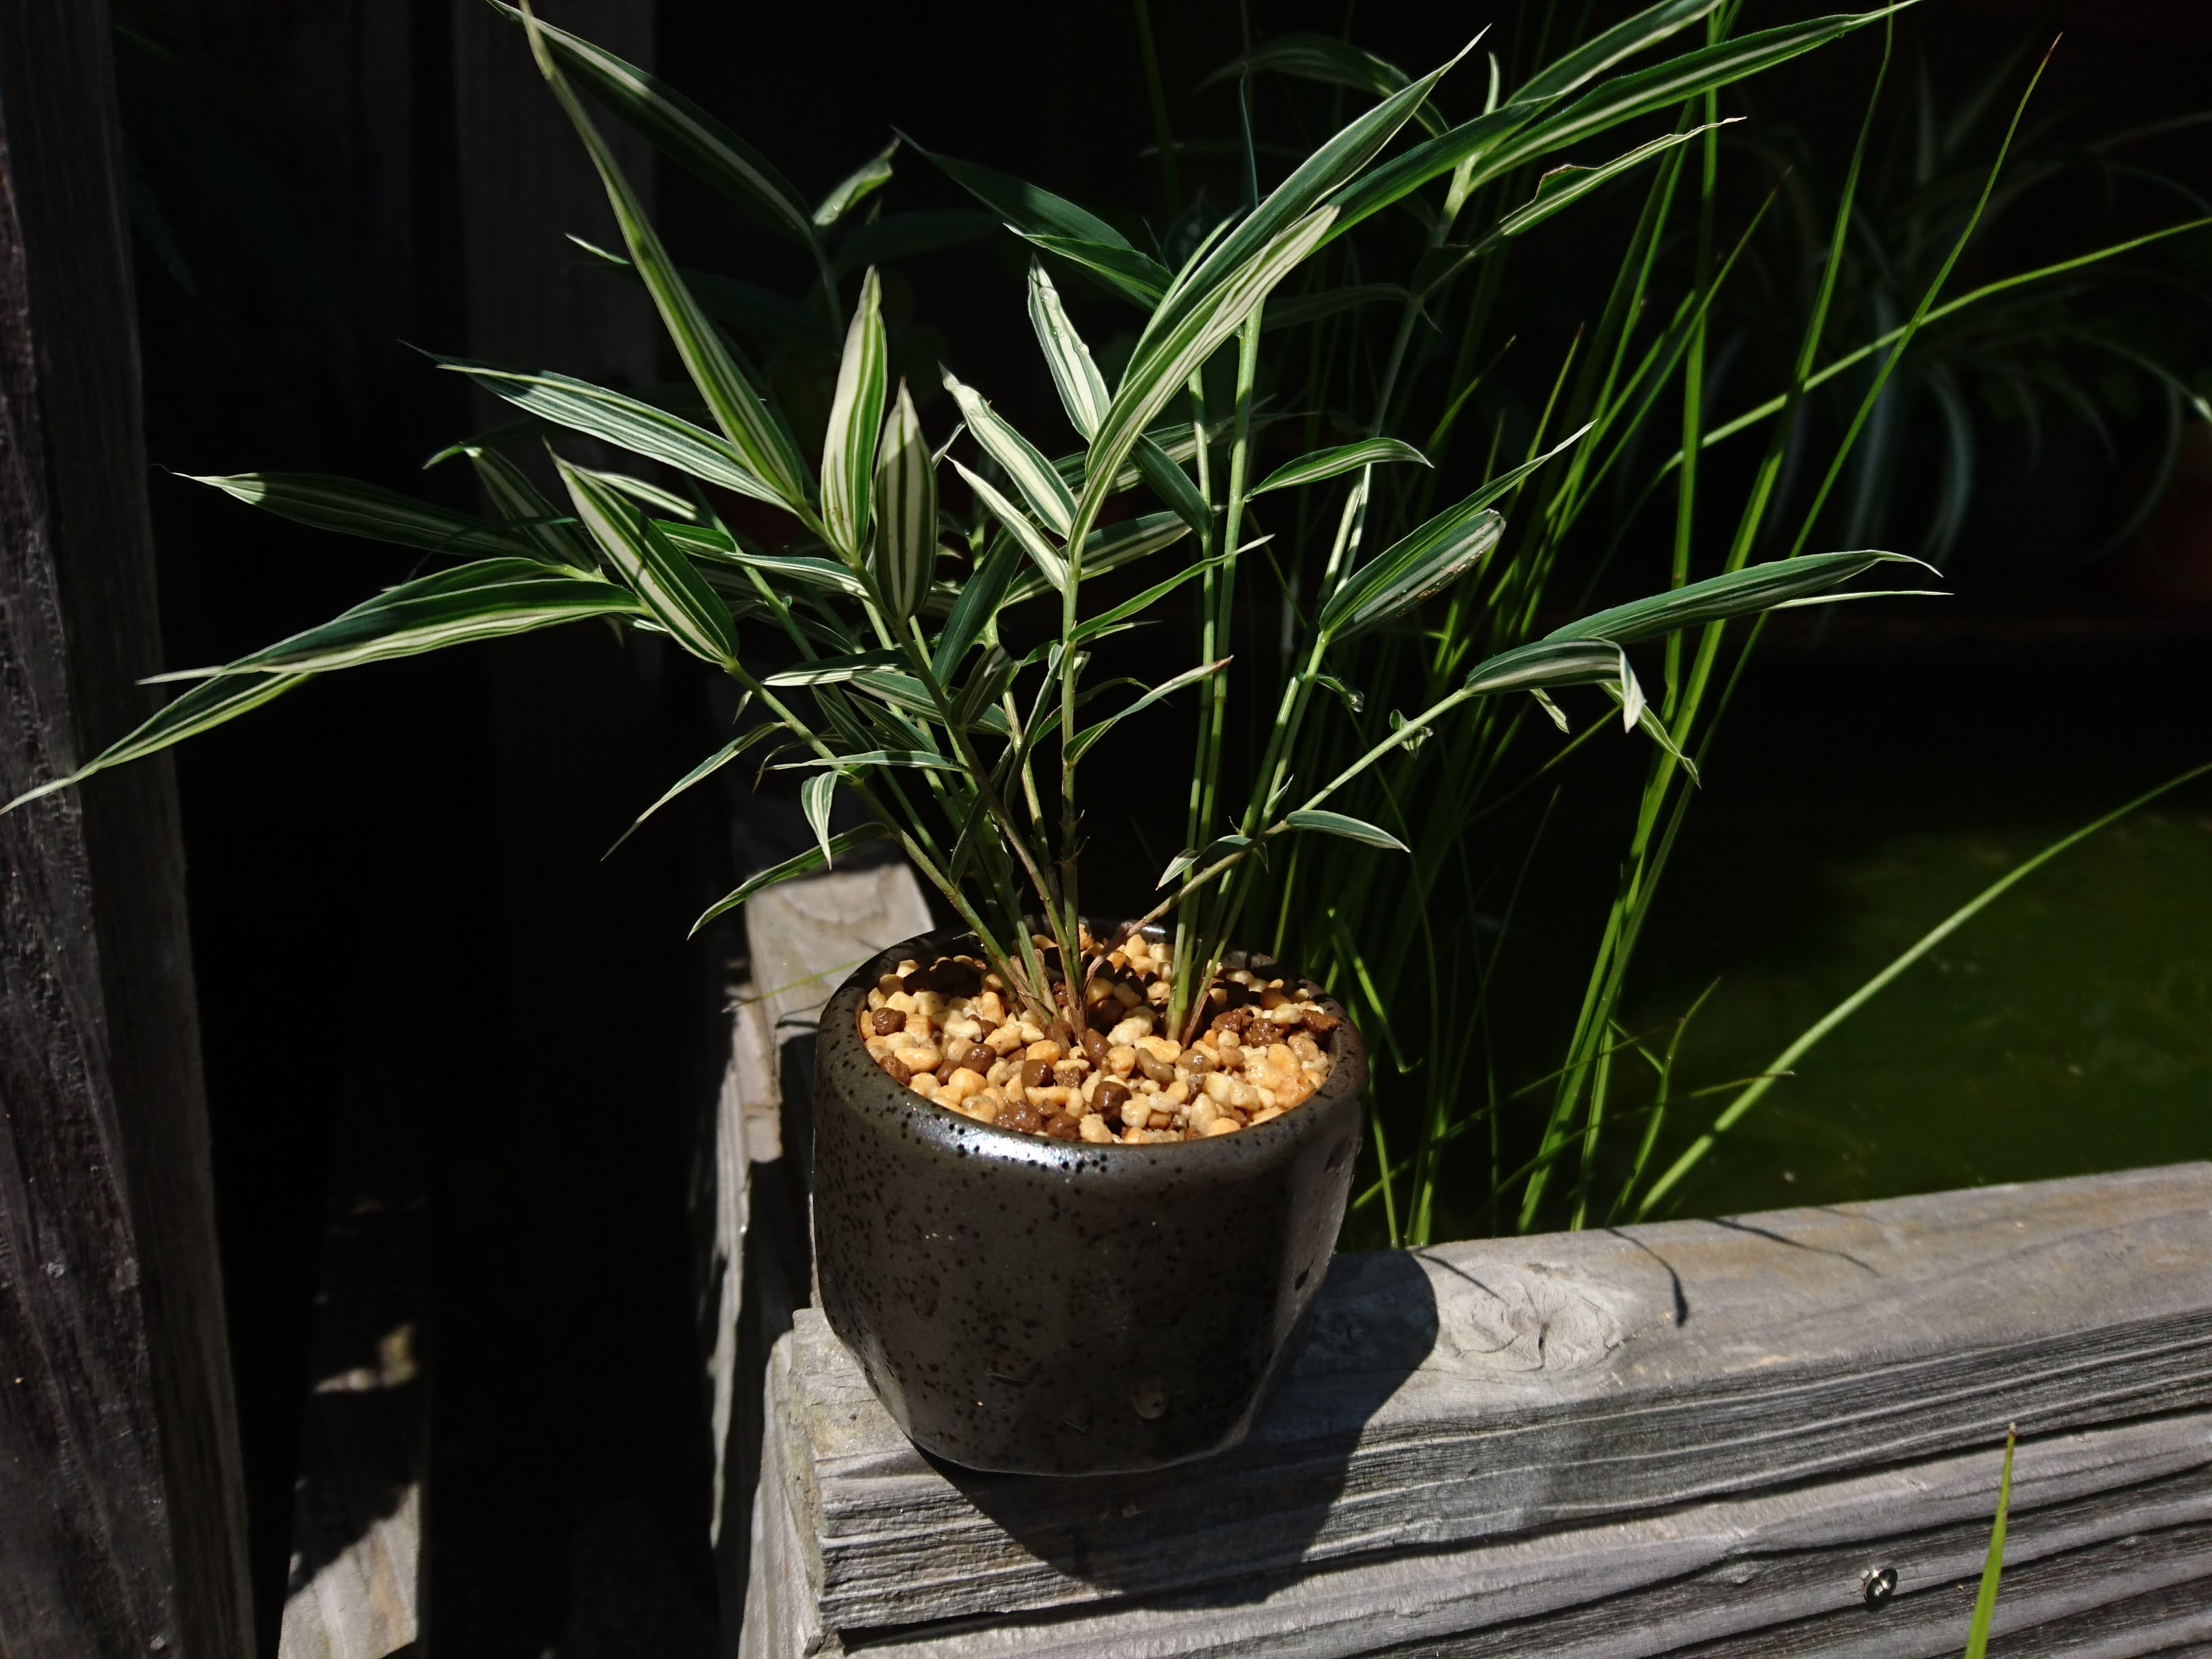 チゴザサ 稚児笹 の育て方 斑入りチゴザサのミニ盆栽を作る メダカの大工